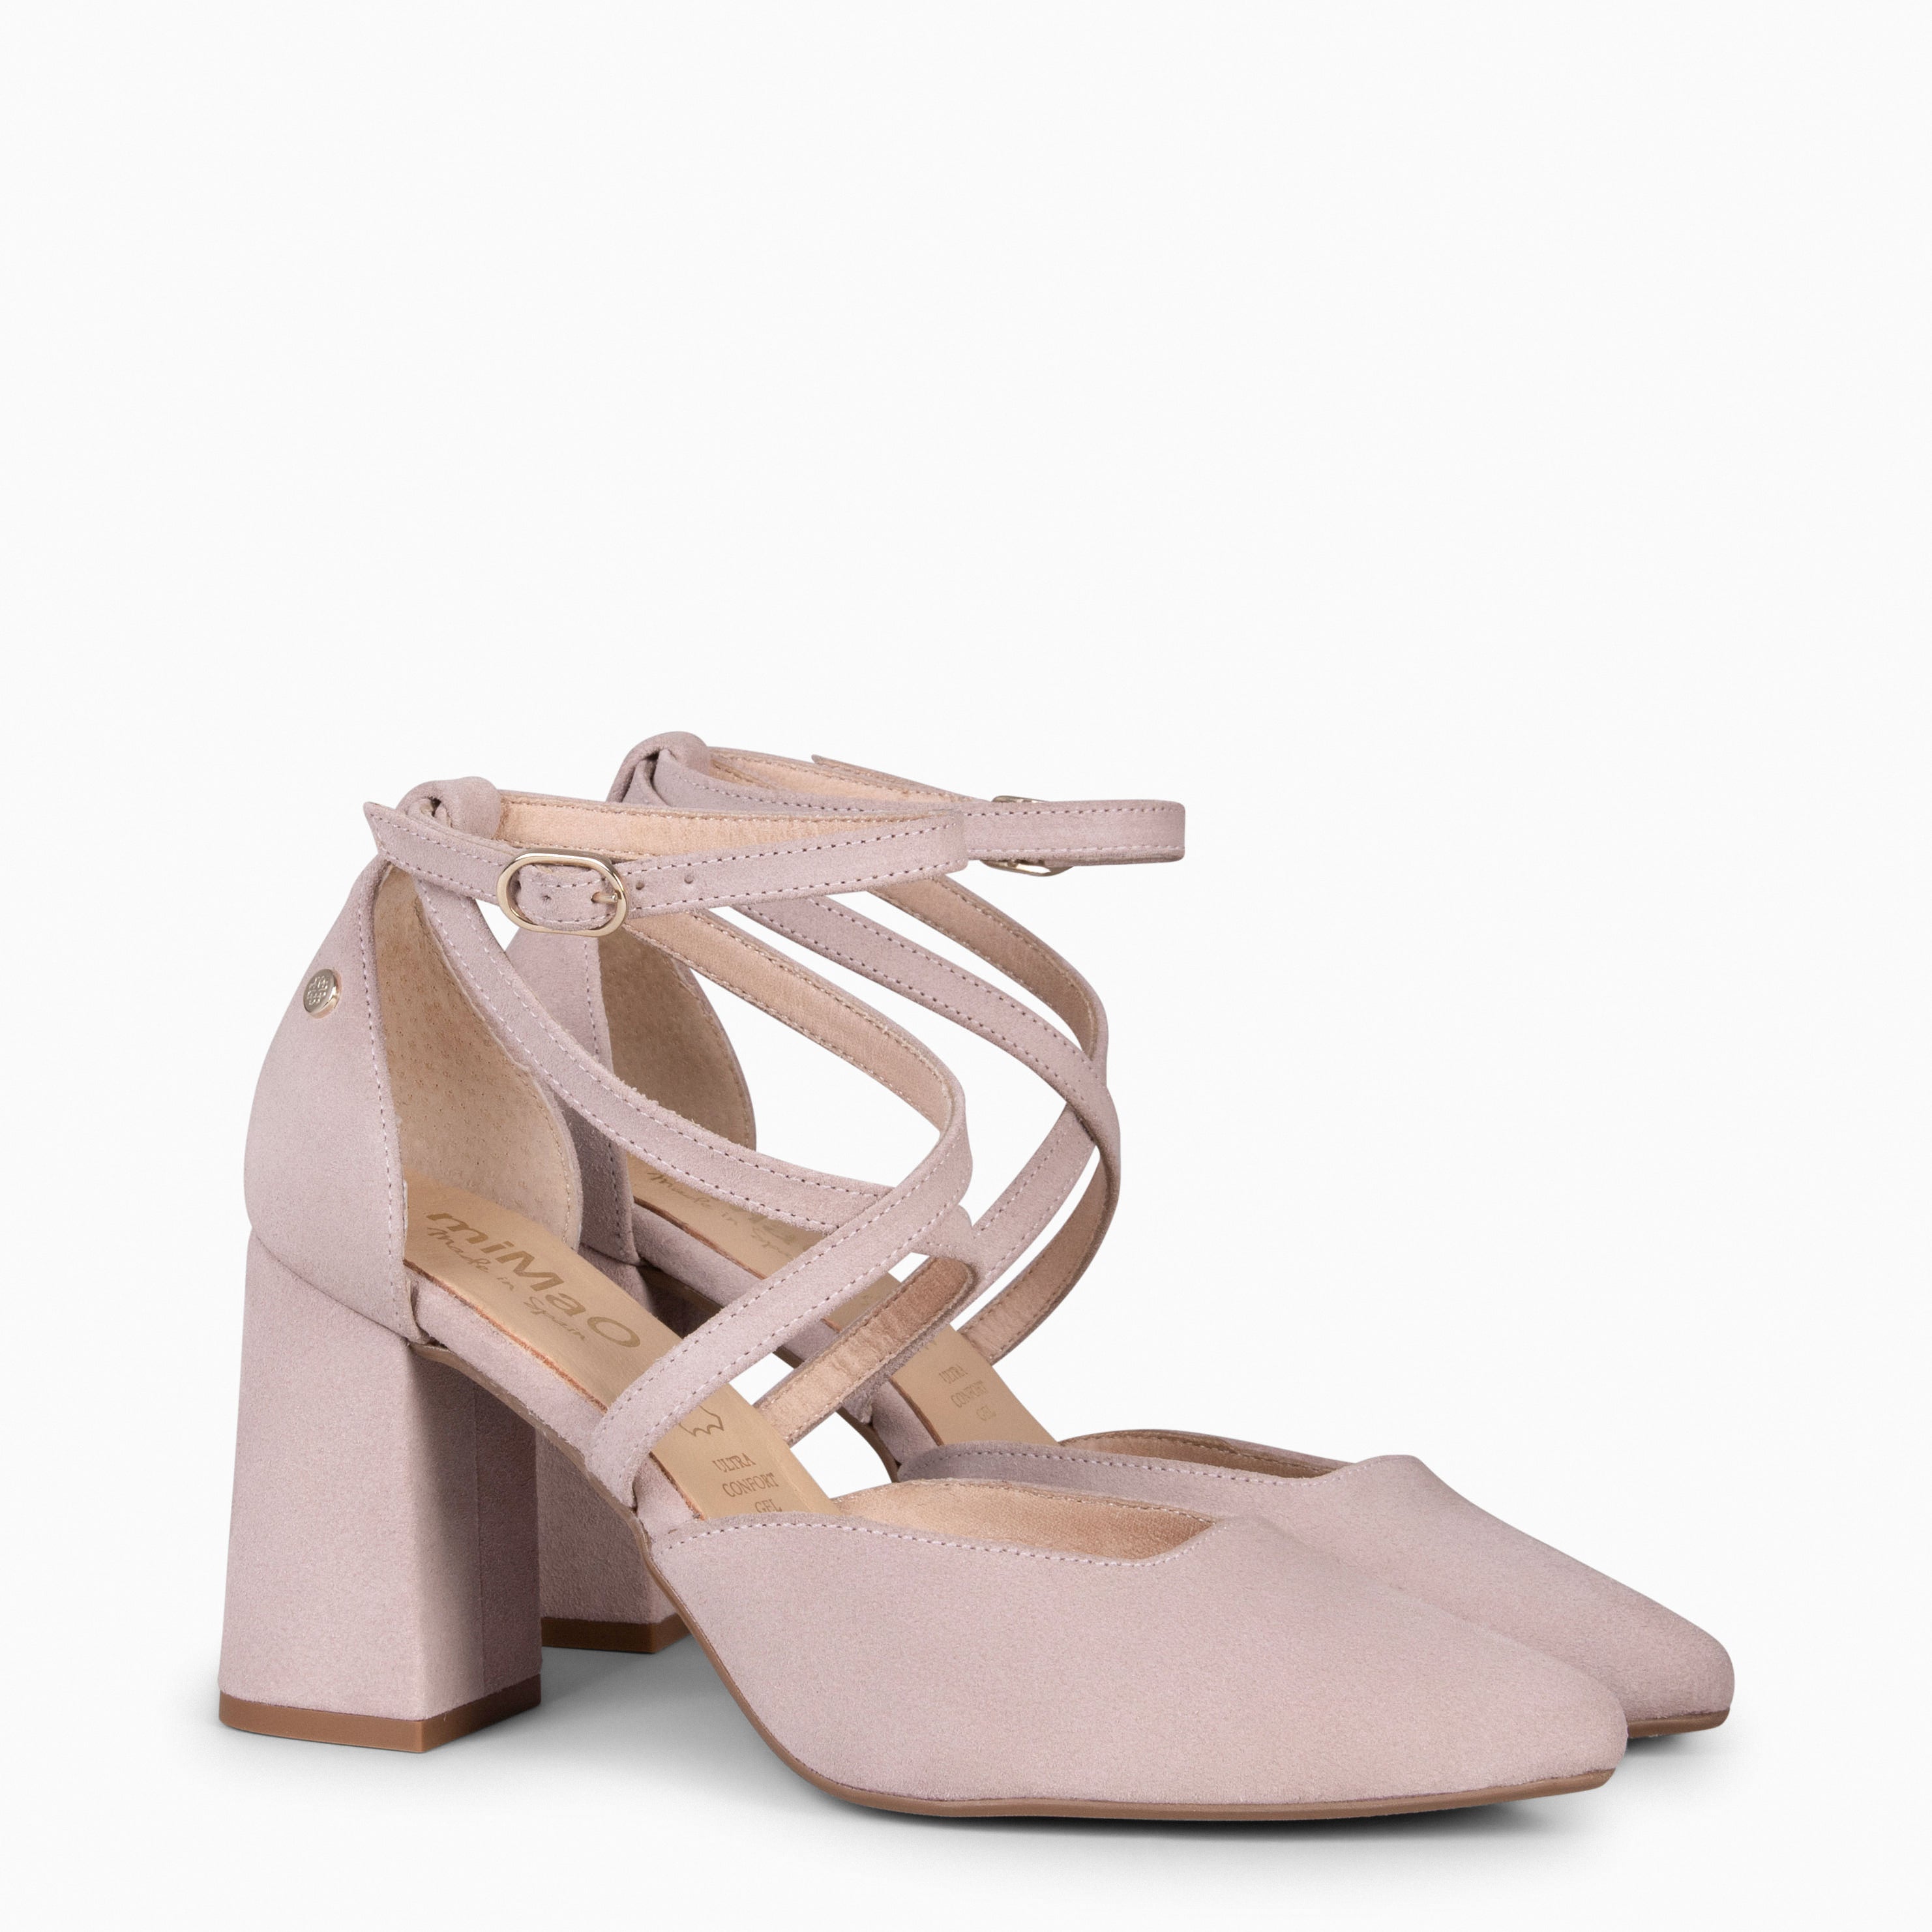 ARIEL – NUDE Wide heel shoe